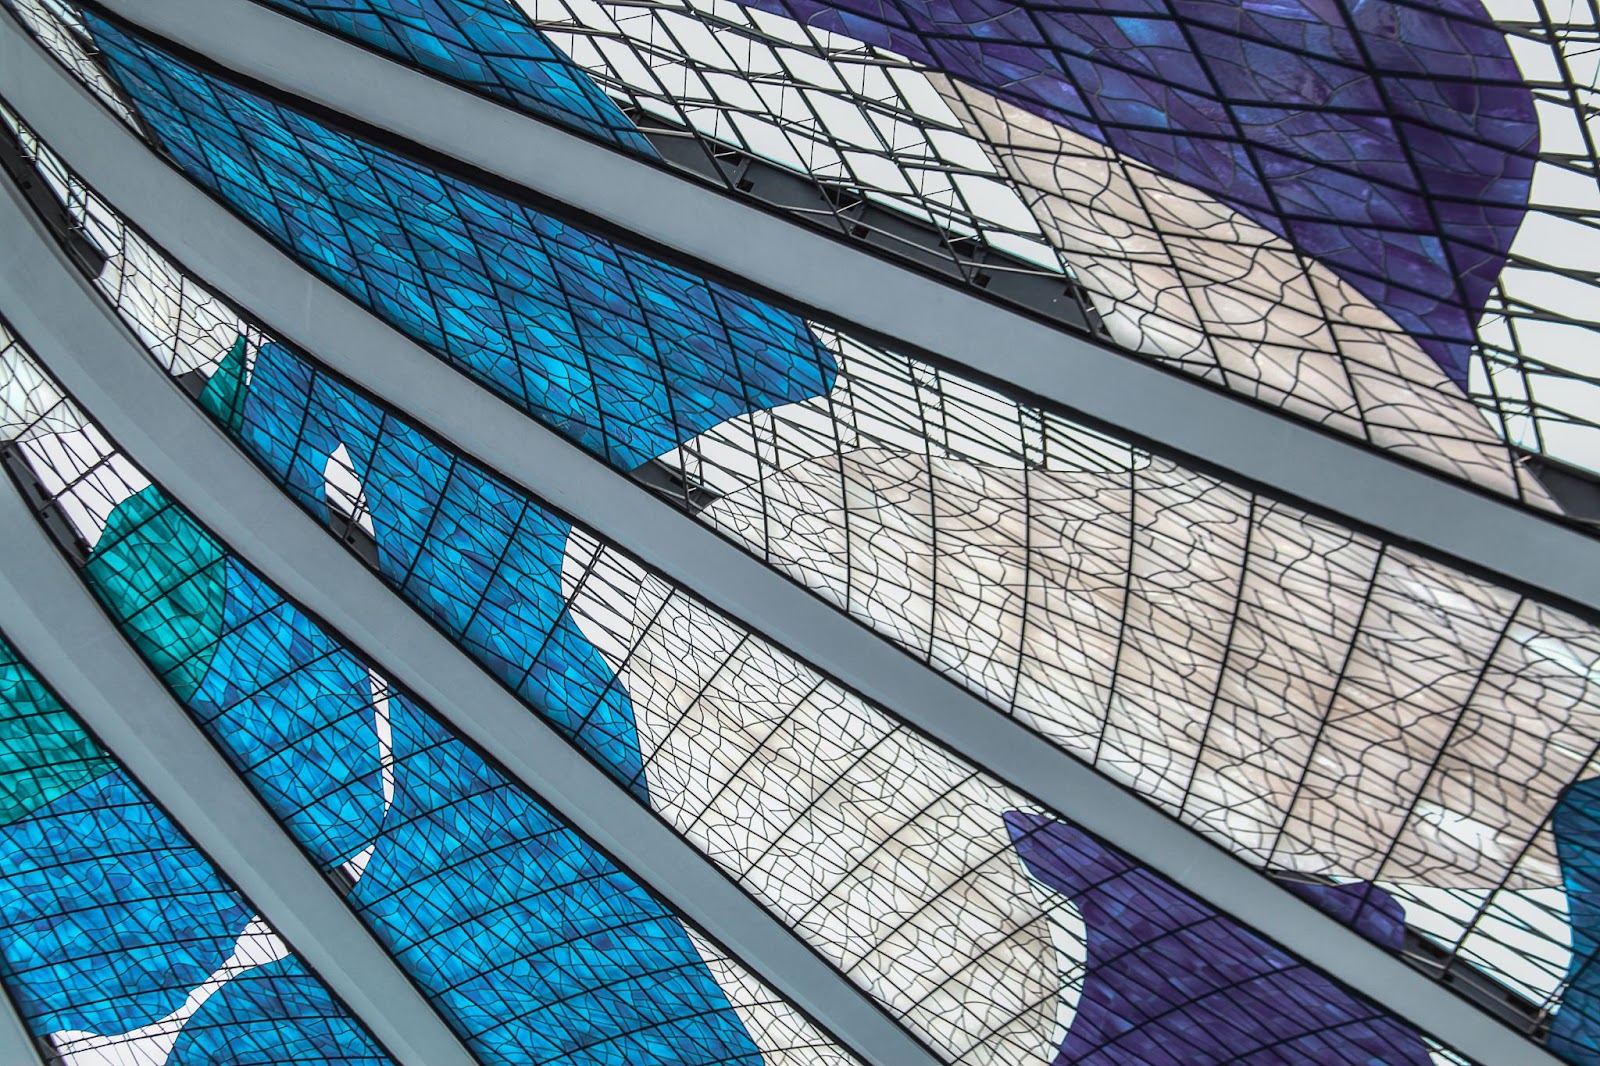 Desenhos internos dos vitrais da Catedral Metropolitana Nossa Senhora Aparecida. Os grandes painéis situados entre os arcos têm formas orgânicas em tons de azul e branco.